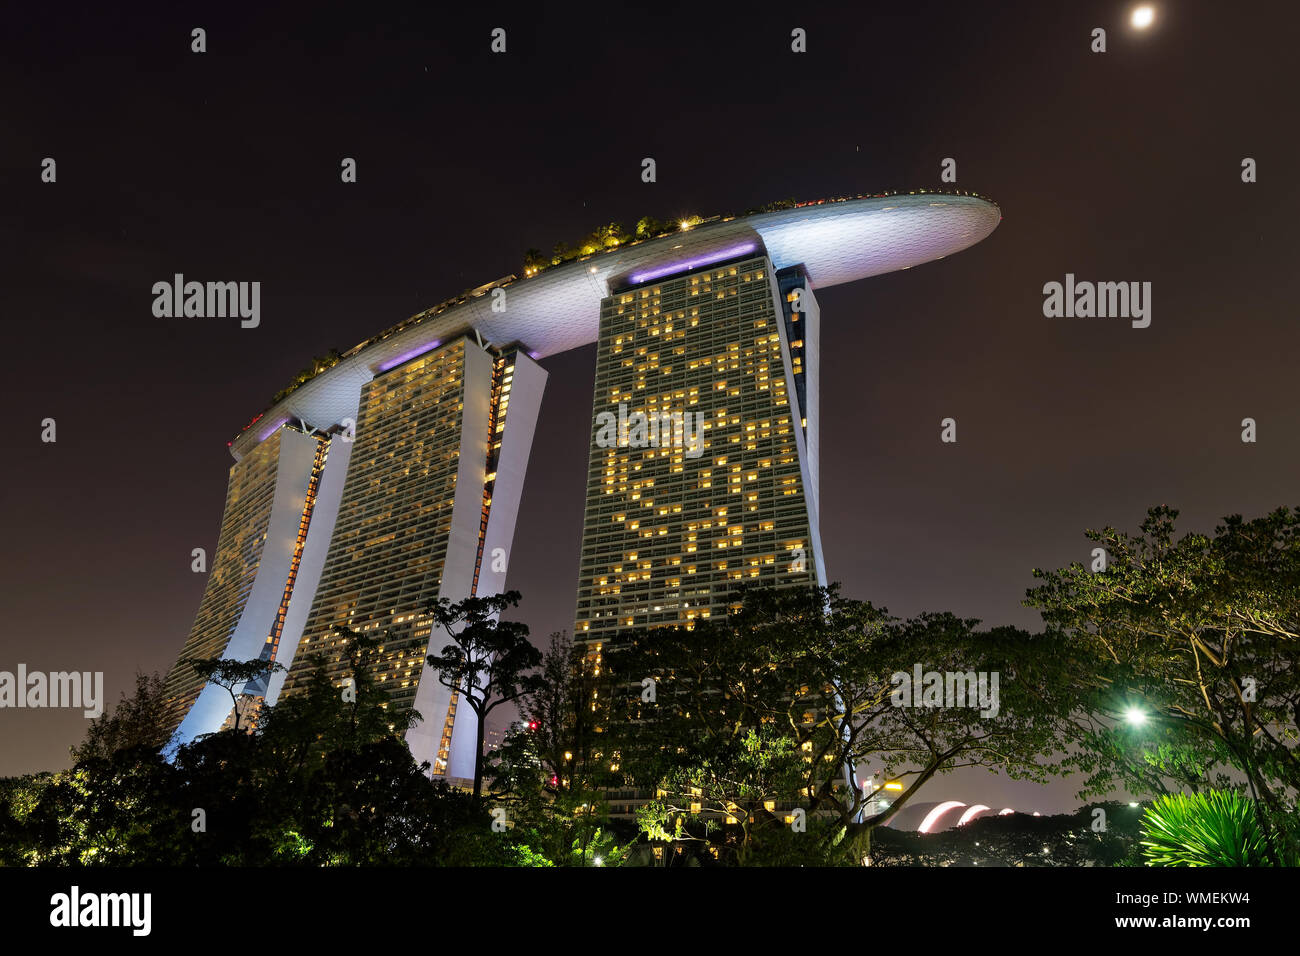 Paysage dans la nuit - Singapour et jardins au bord de la baie, lumières colorées, de l'eau et l'hôtel en forme de voile. Banque D'Images